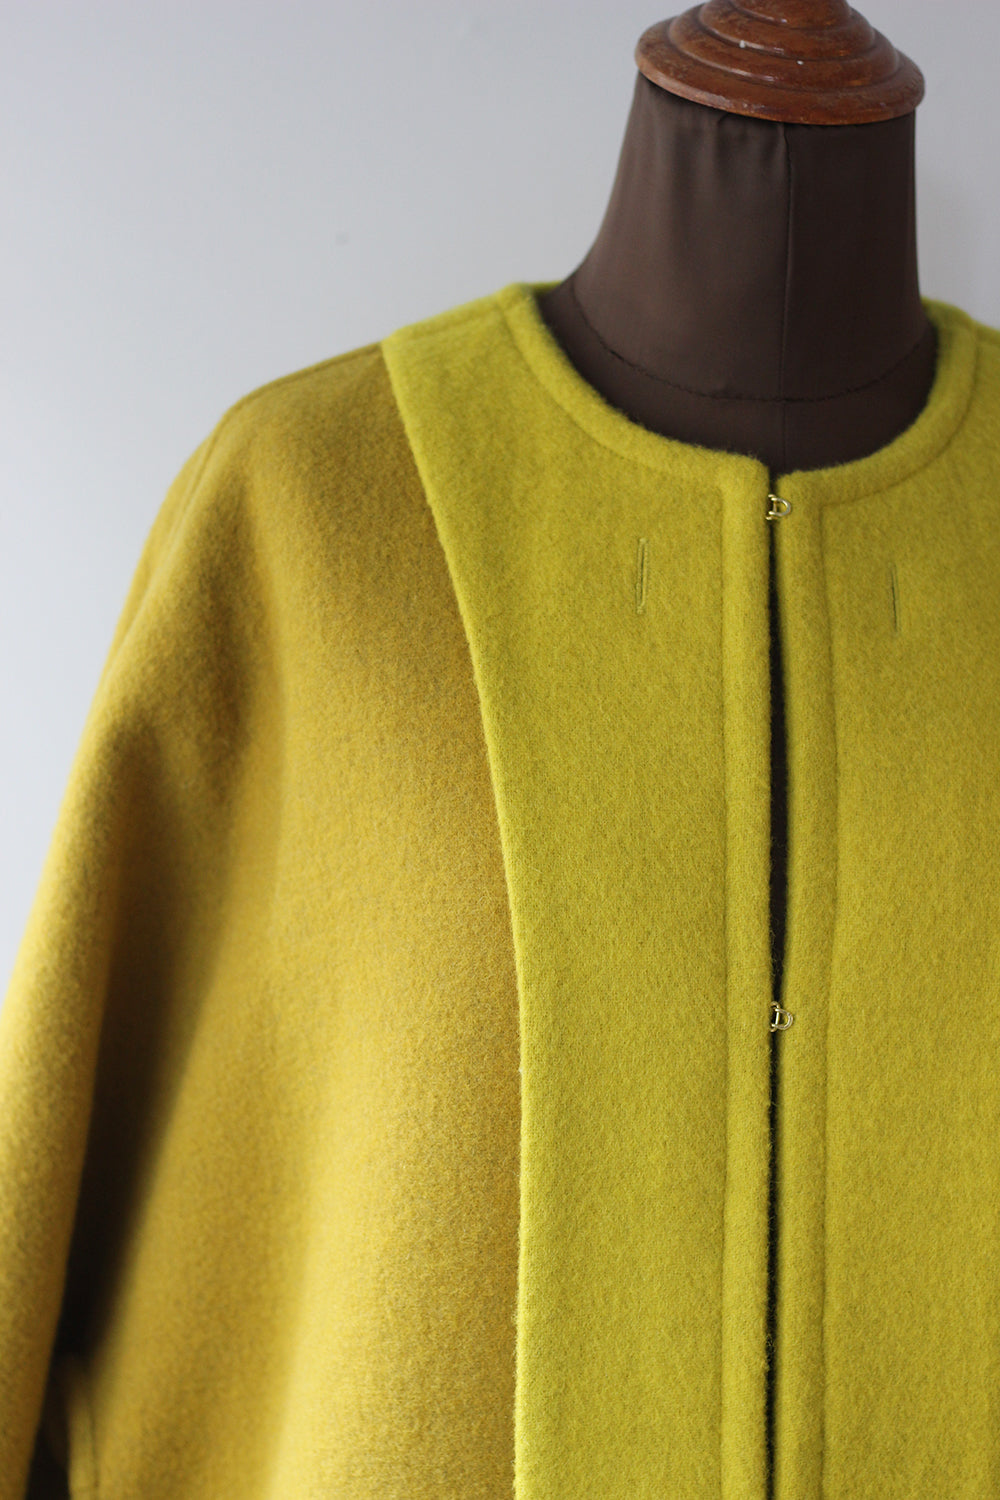 JUN MIKAMI "reversible coat" (yellow)